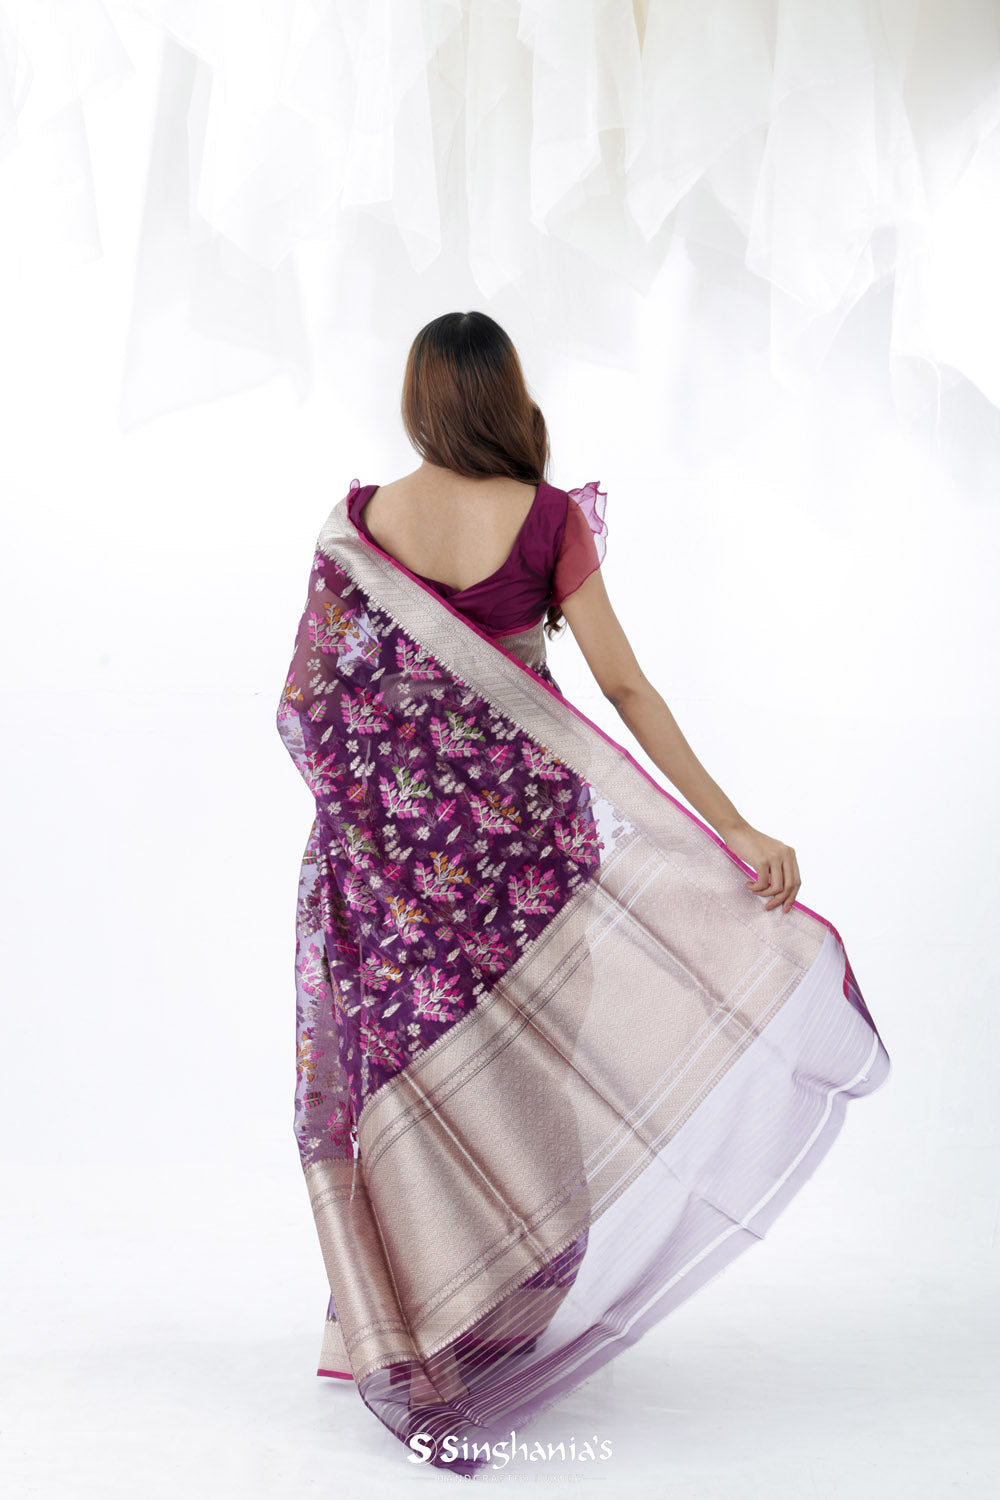 English Violet Jamdani Banarasi Silk Saree With Floral Design